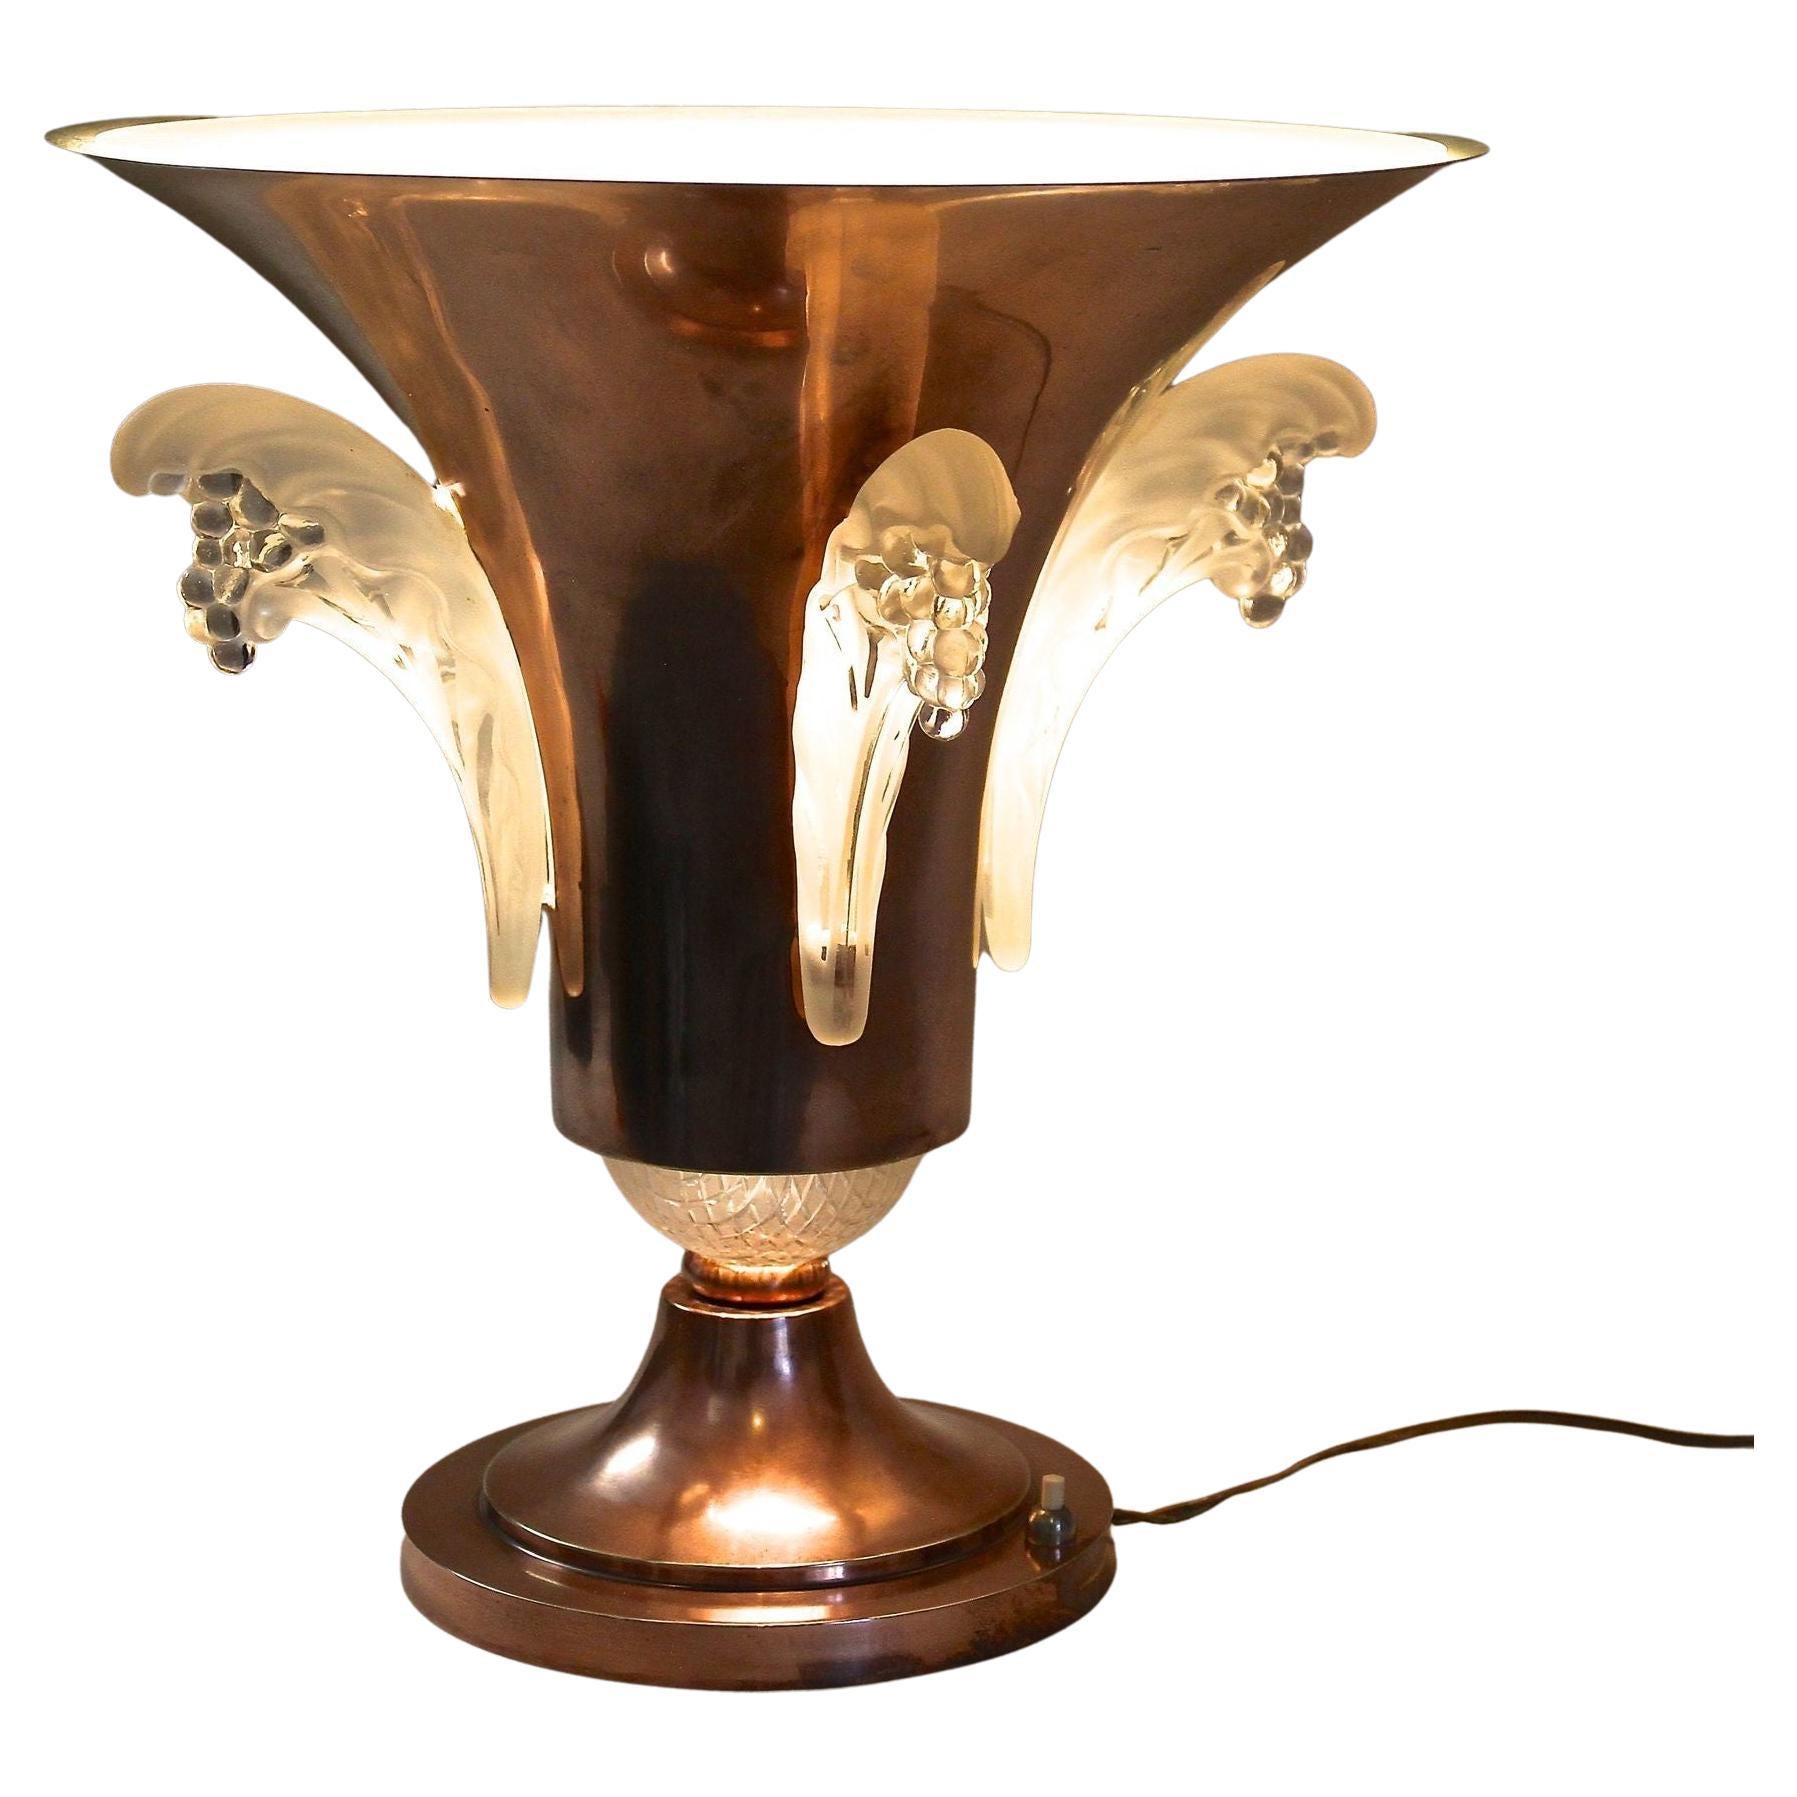 Lampada da tavolo Art Deco in rame con elementi in vetro Lalique, Francia, 1925 circa